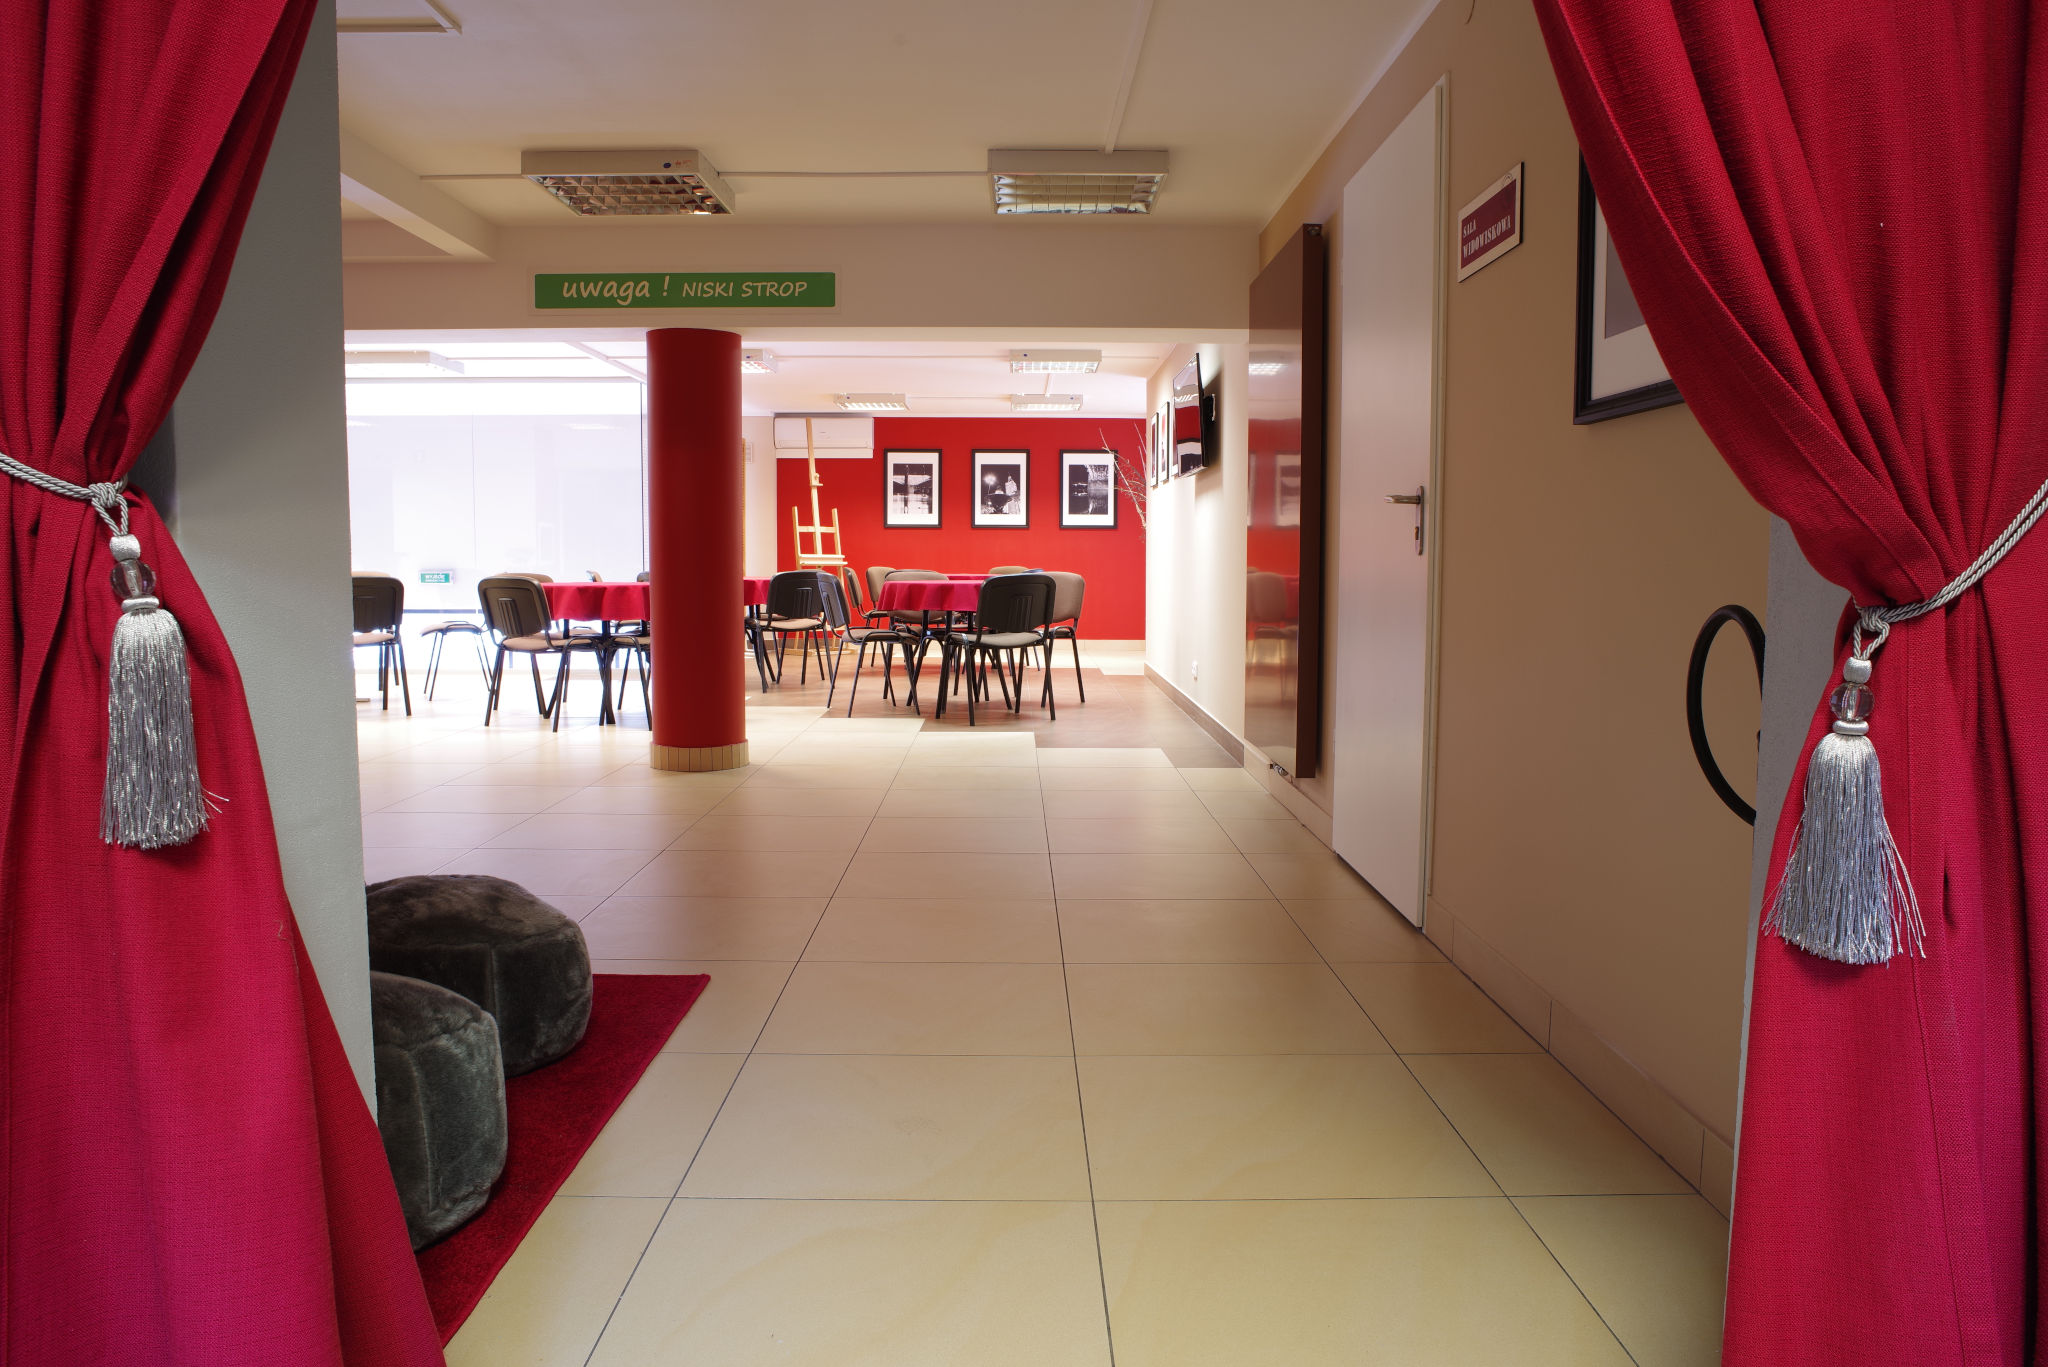 Sala na spotkanie. Widoczna kremowa podłoga, czerwona kolumna, rozstawione krzesła i stoły.  Widać czerwone kotary od strony wejścia na salę.